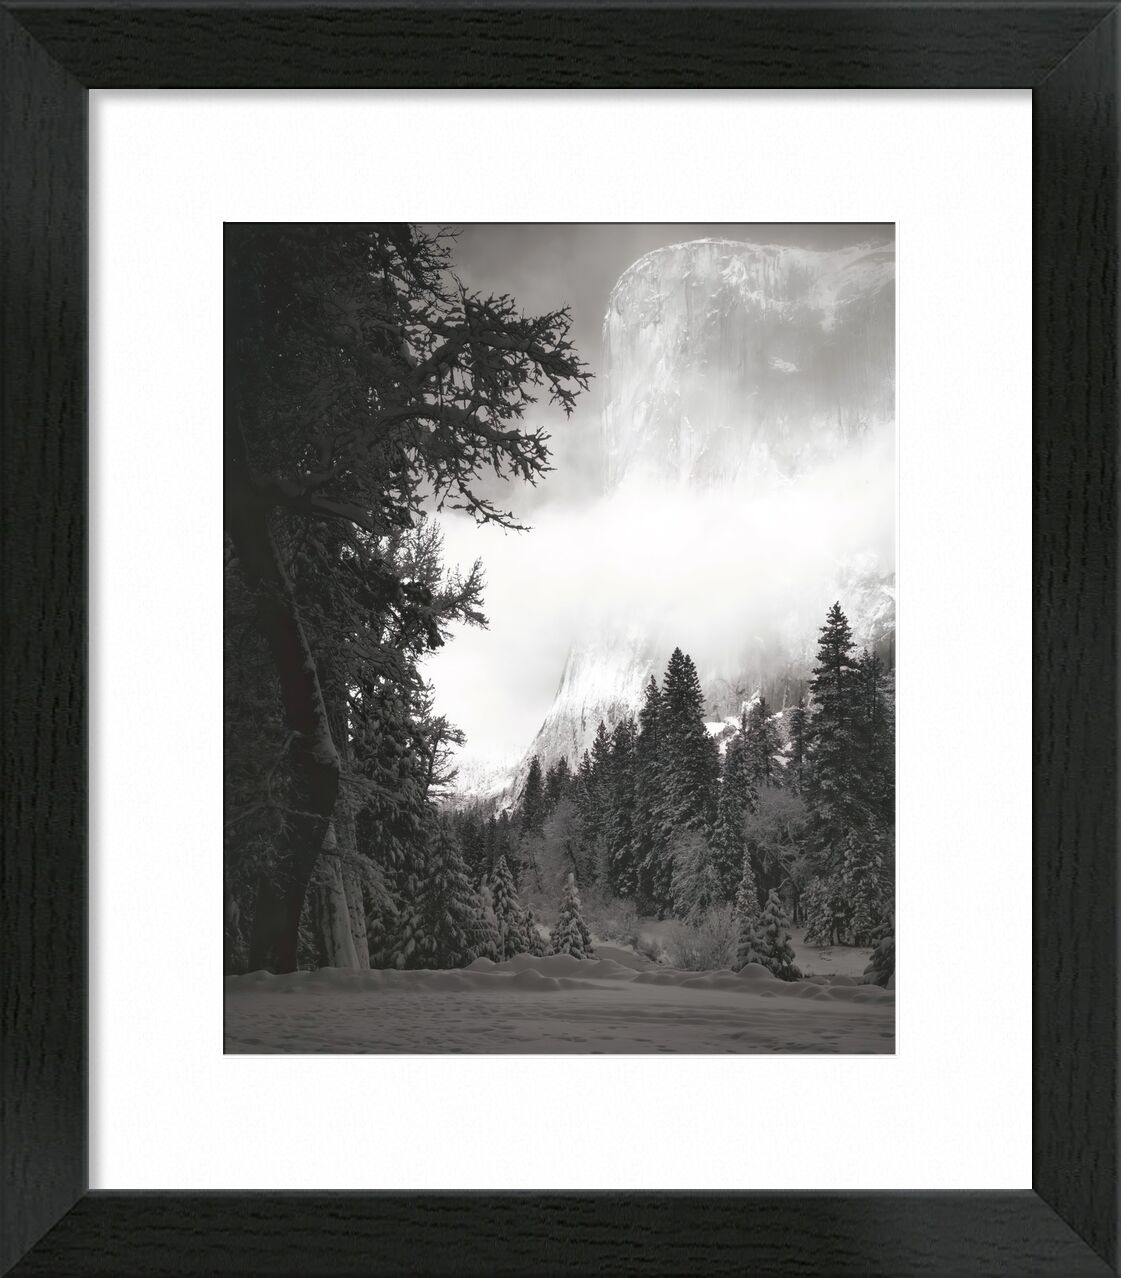 El Capitan, Sonnenaufgang, Winter, Yosemite, 1968 - Ansel Adams von Bildende Kunst, Prodi Art, ANSEL ADAMS, adams, Sonne, Sonnenaufgang, Berge, Schwarz und weiß, Yosemite